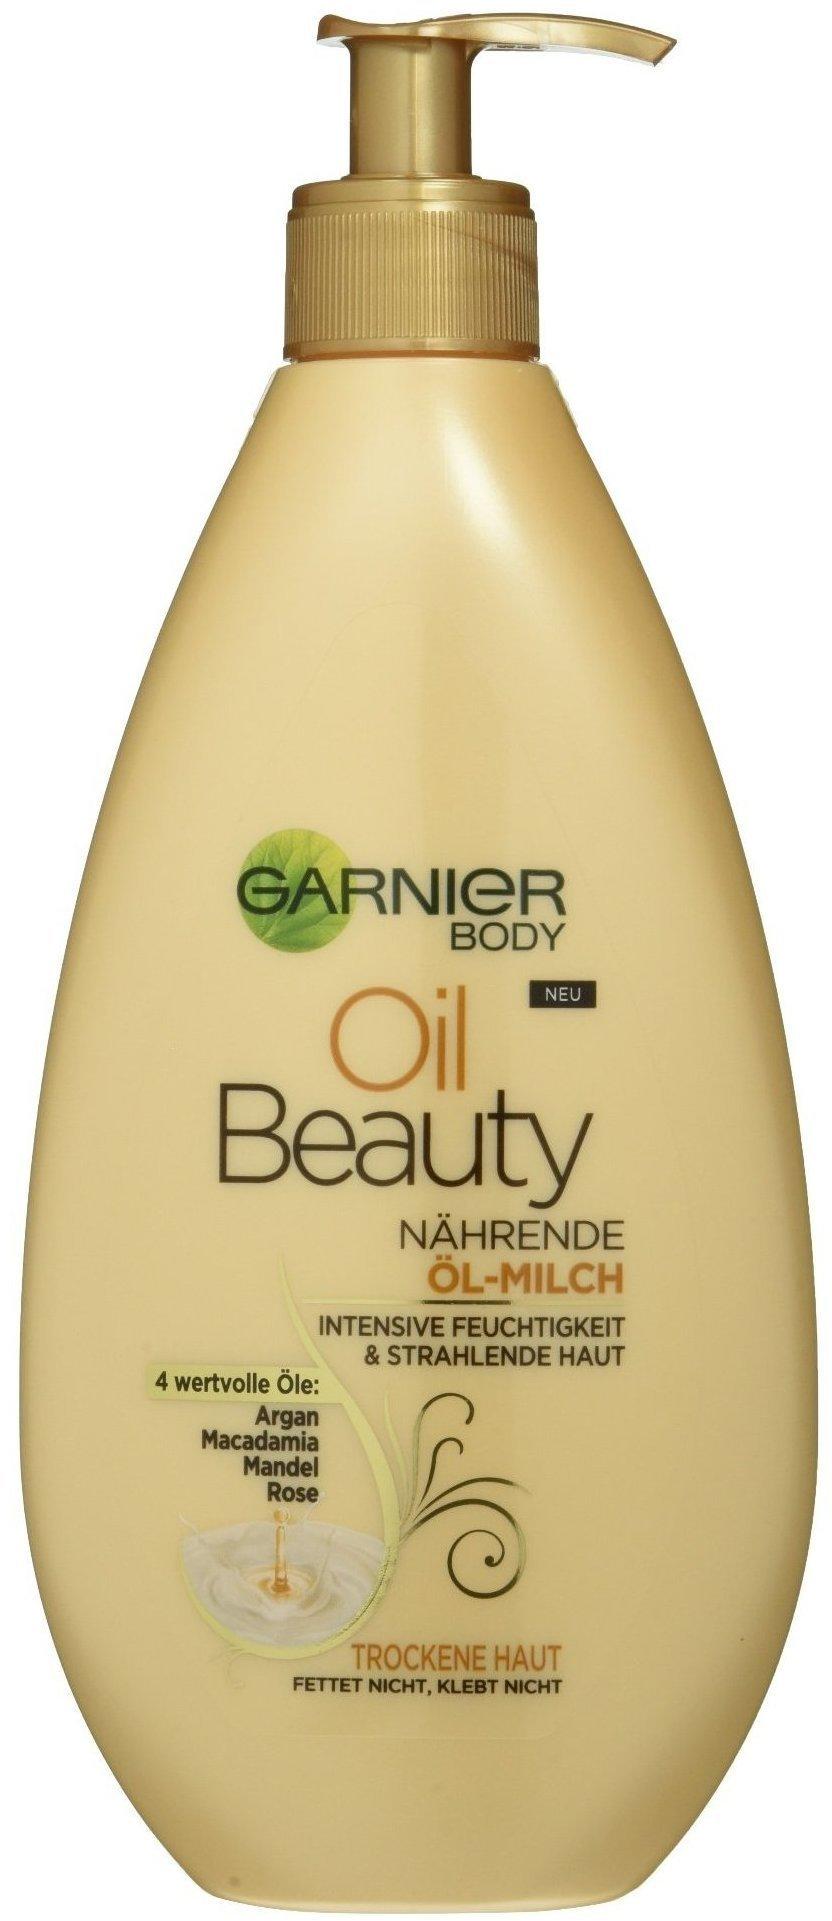 Garnier Oil Beauty Nährende Öl-Milch (400ml) - Angebote ab 4,95 €